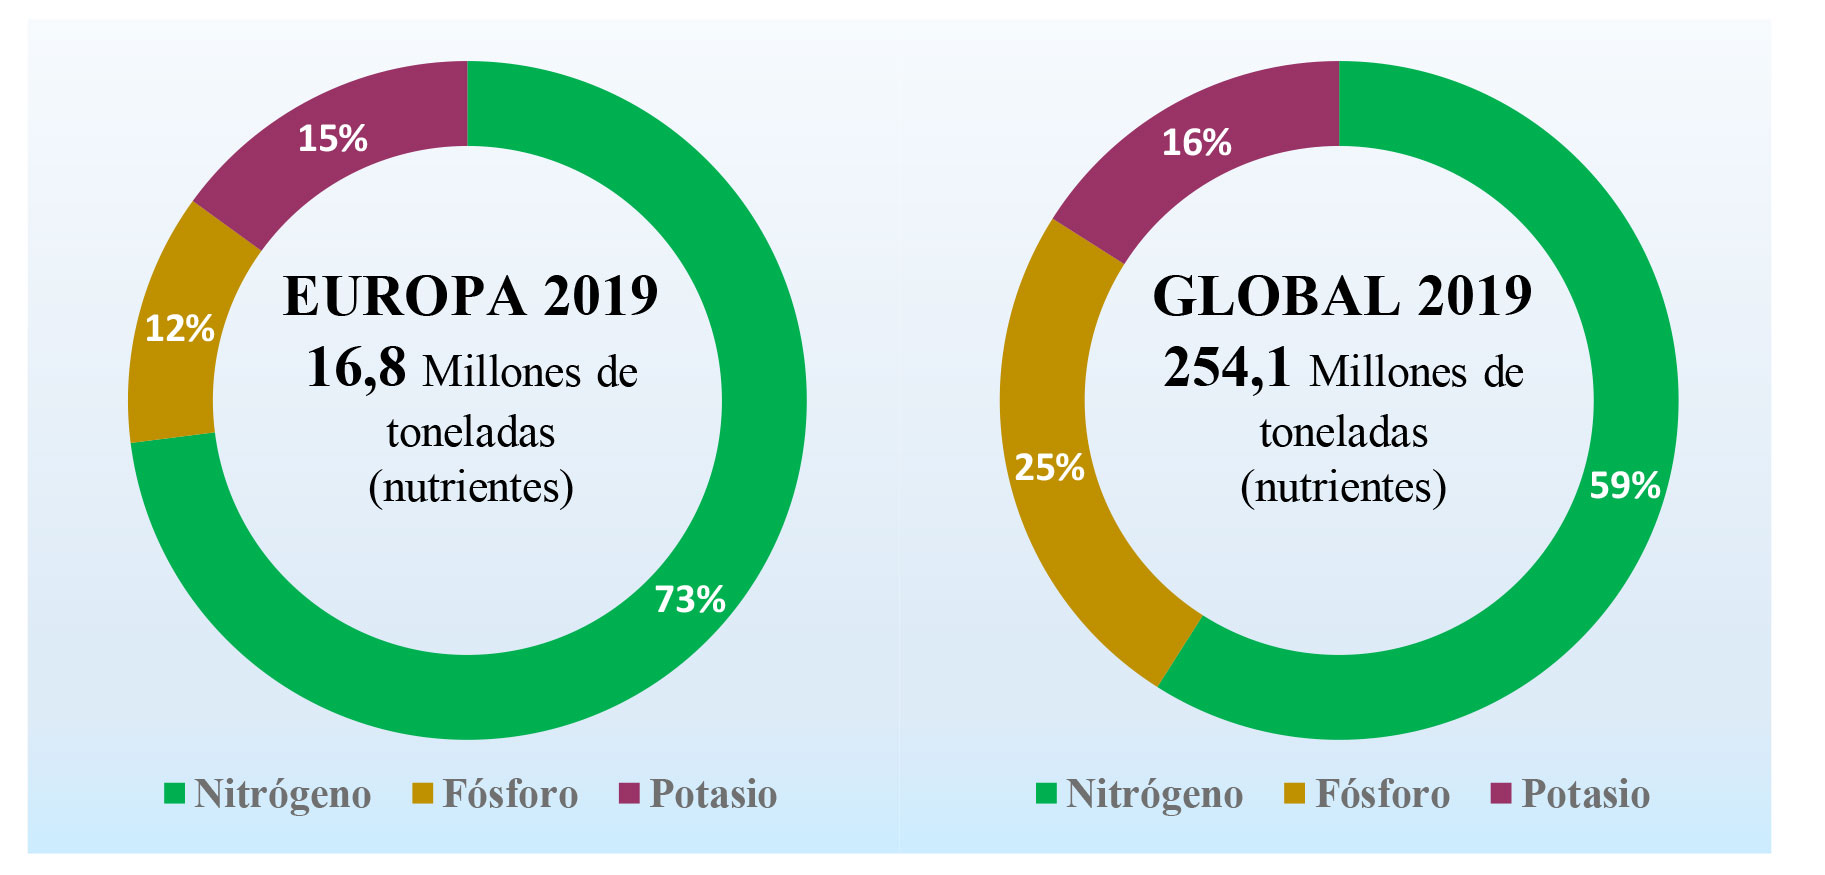 Figura 3. Ventas totales de fertilizantes fabricados segn nutrientes (2019). Fuente: Fertilizers Europe (2021)